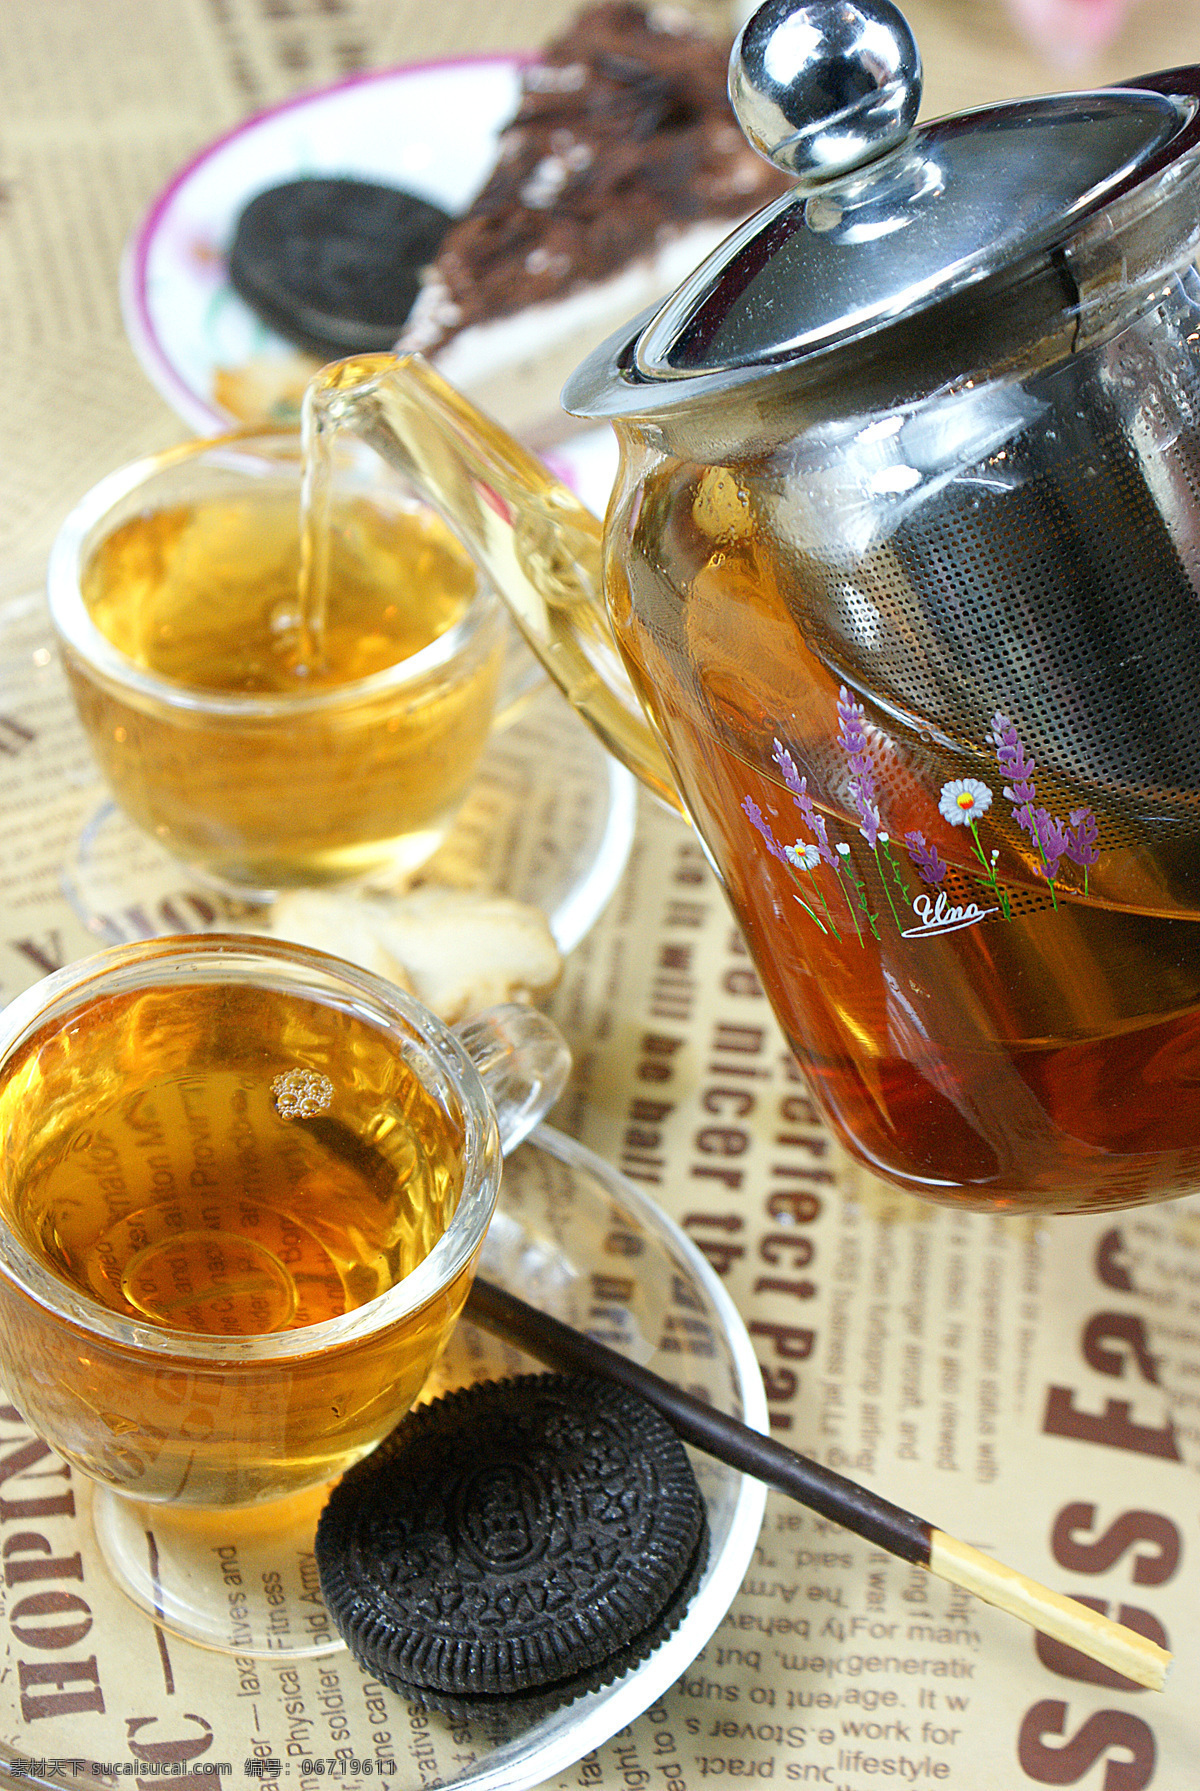 红茶 泰勒茶 罗纳茶 高清图 保健茶 茶 传统美食 餐饮美食